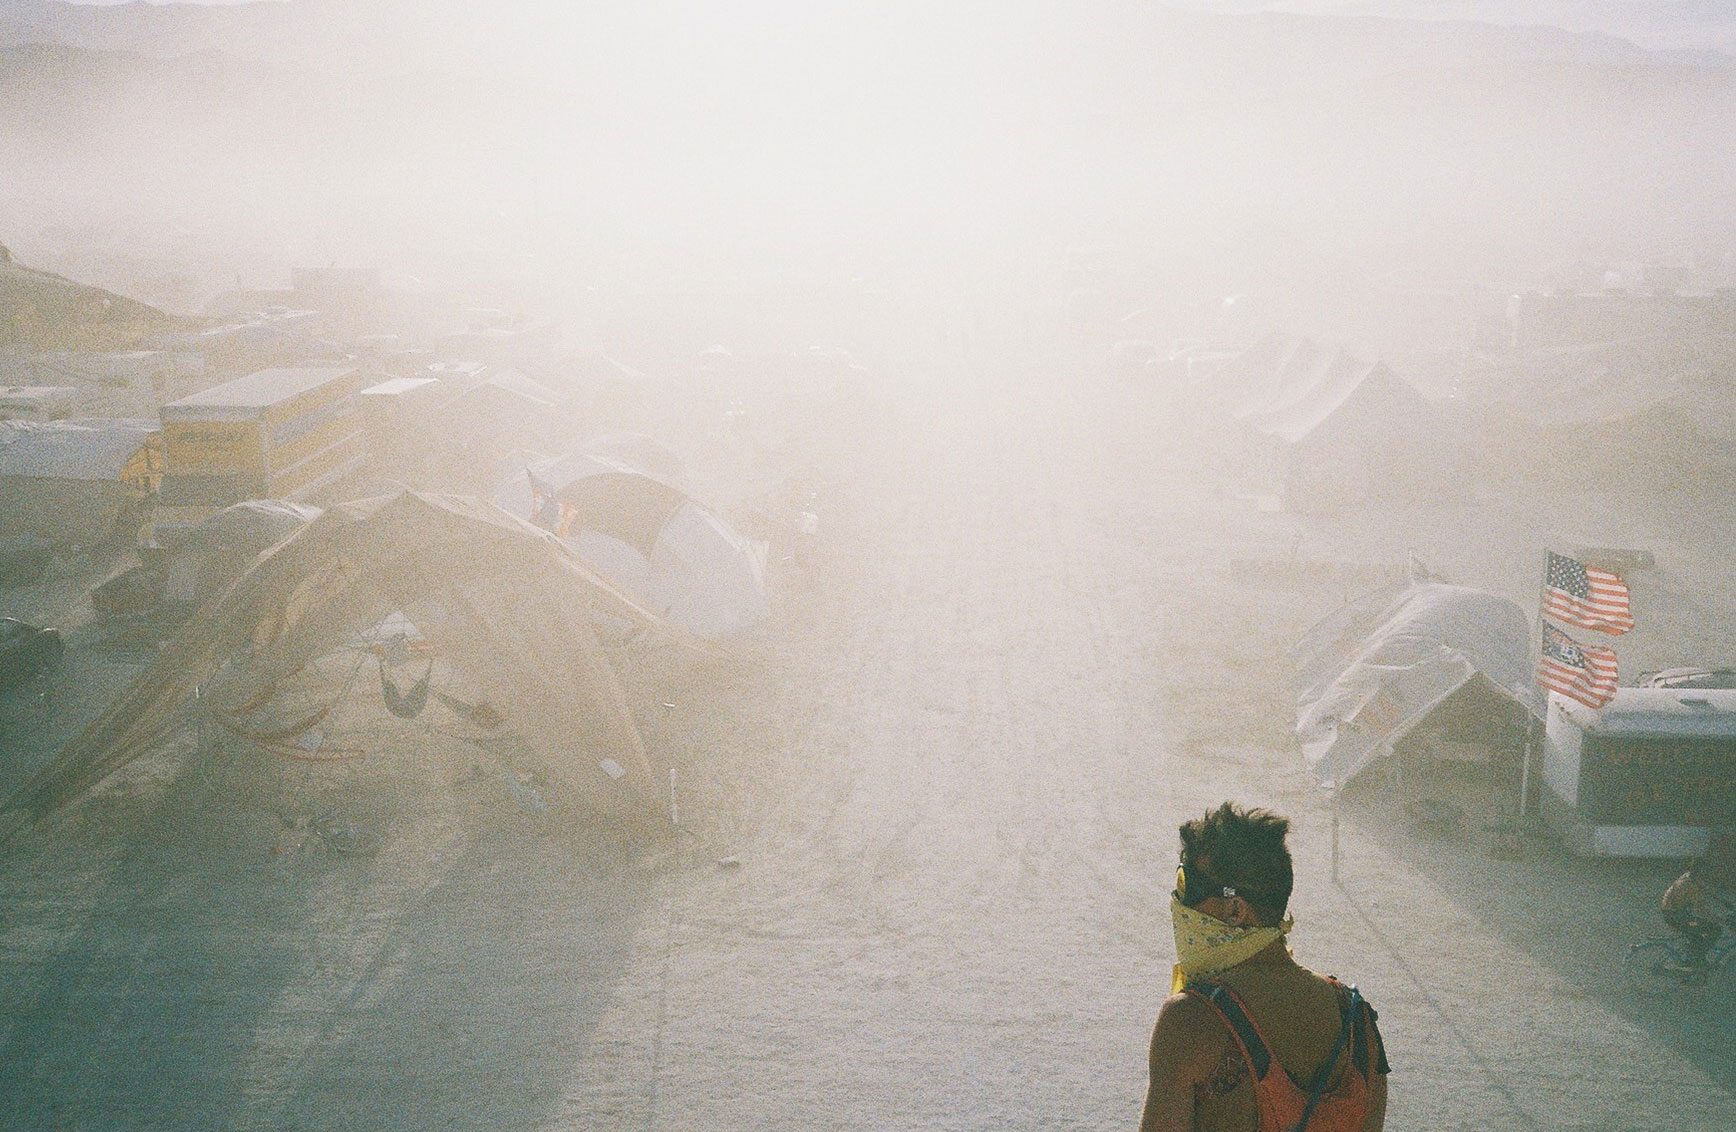 Sandstorm at Burning Man, Black Rock City